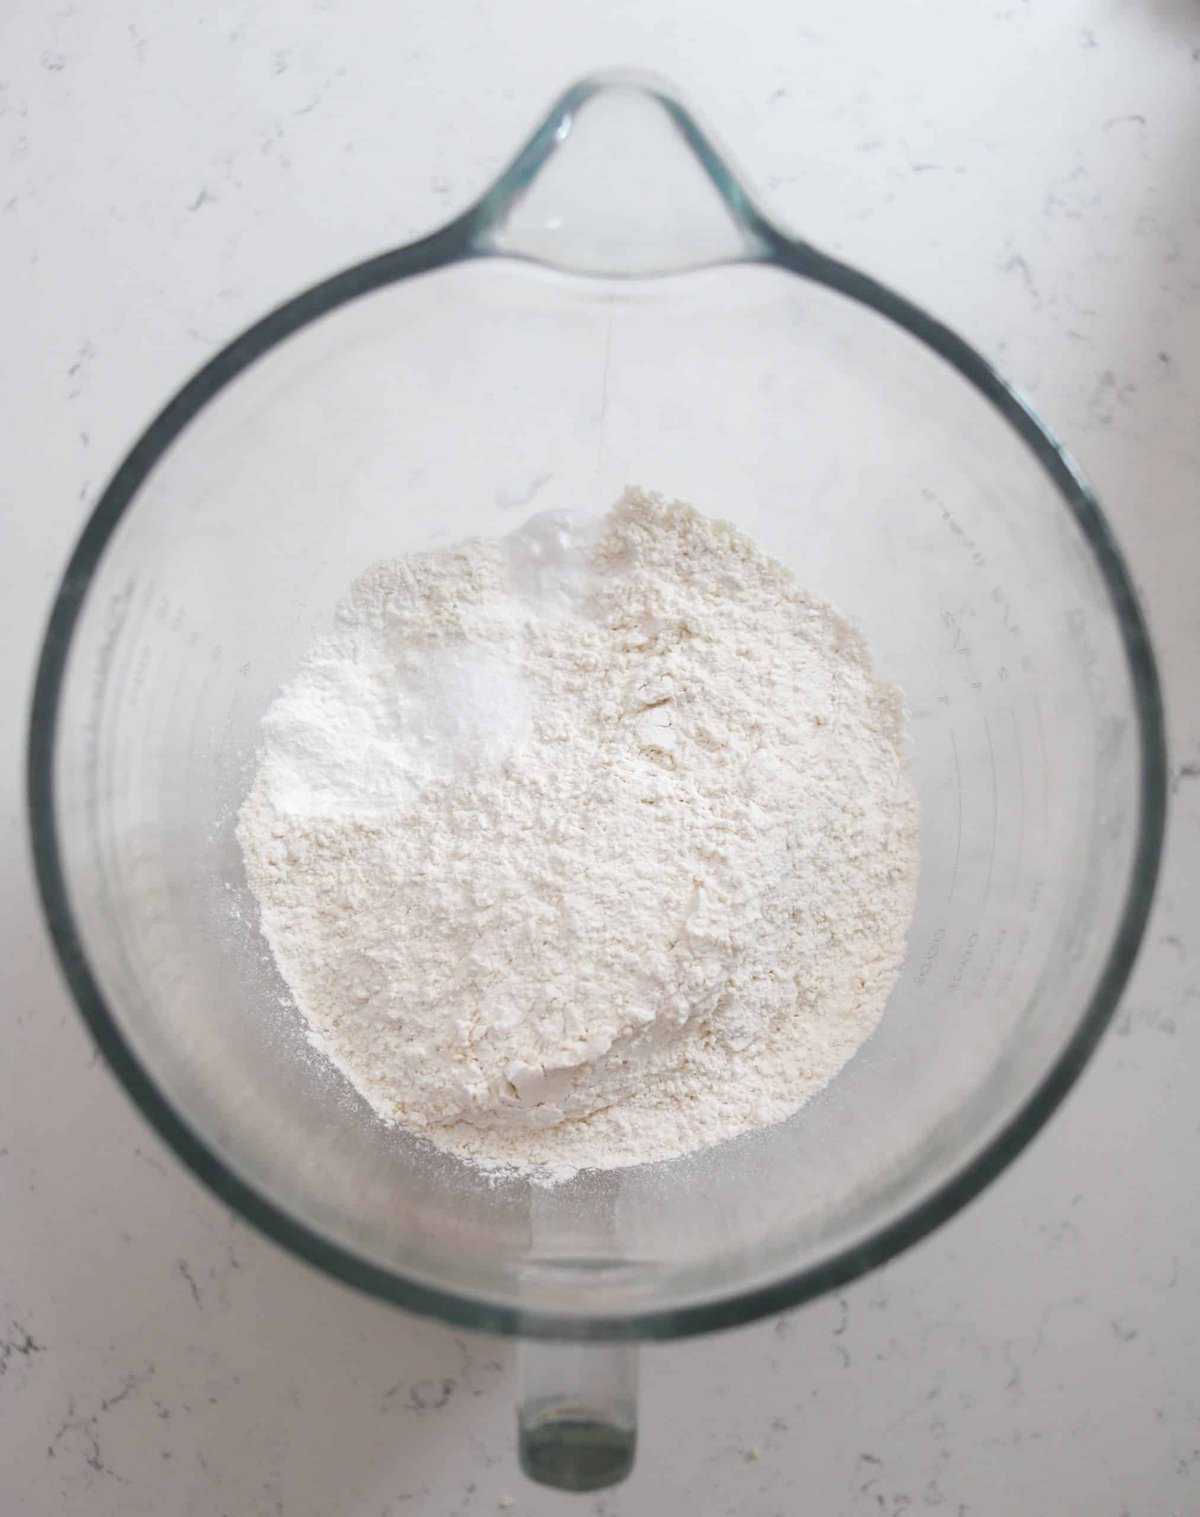 dry ingredients for cheddar Irish soda bread recipe in a bowl